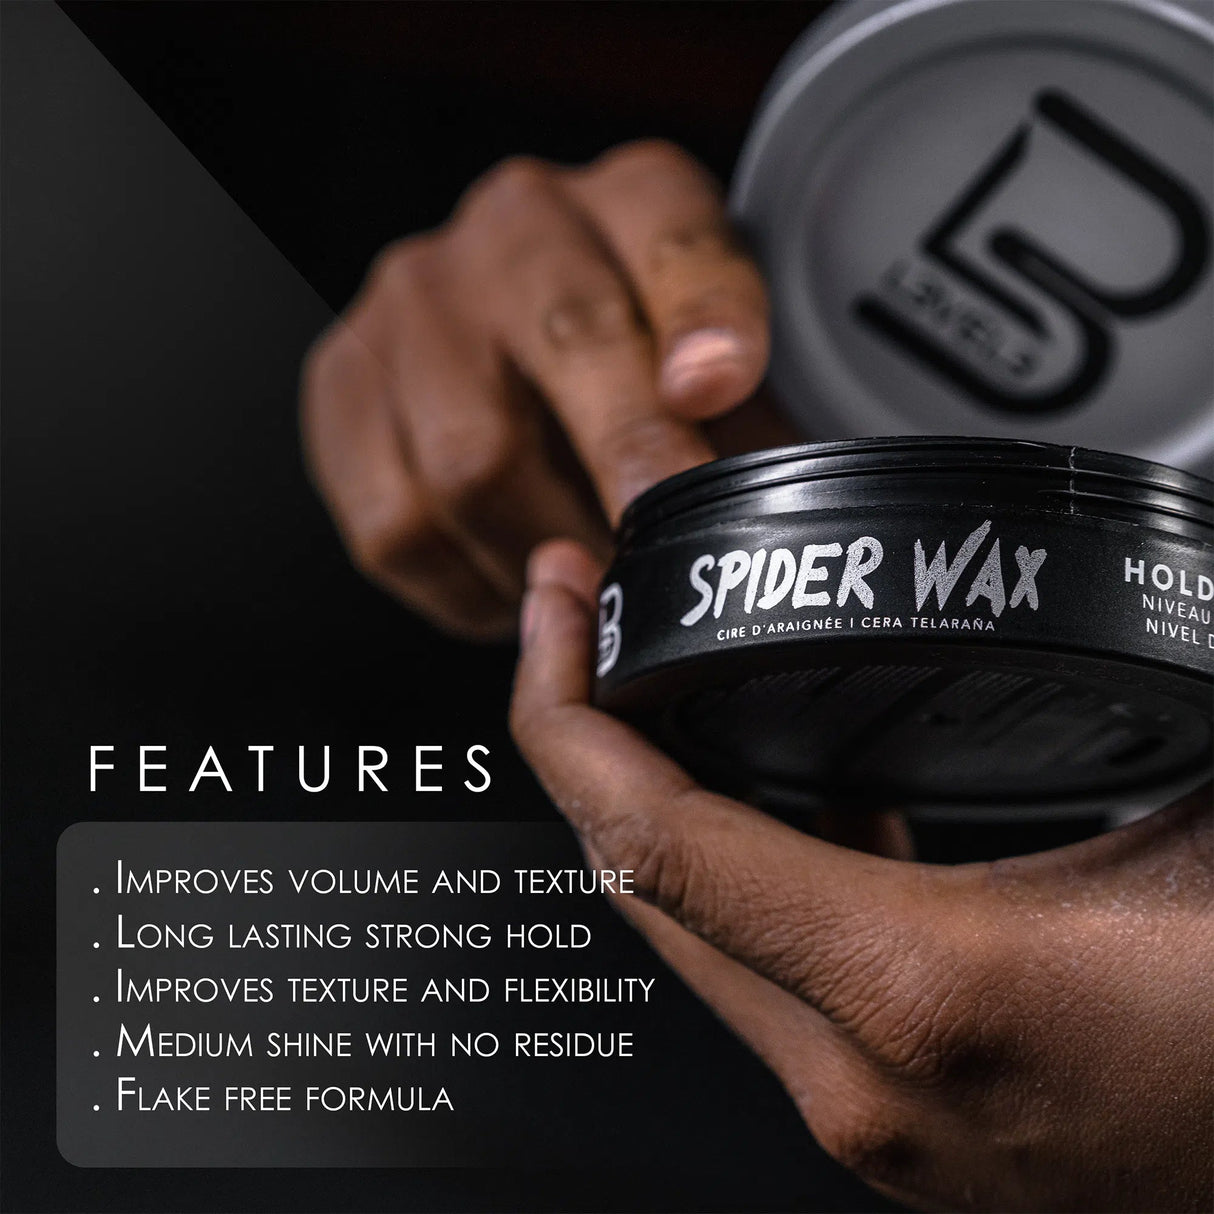 Spider Wax-L3VEL3